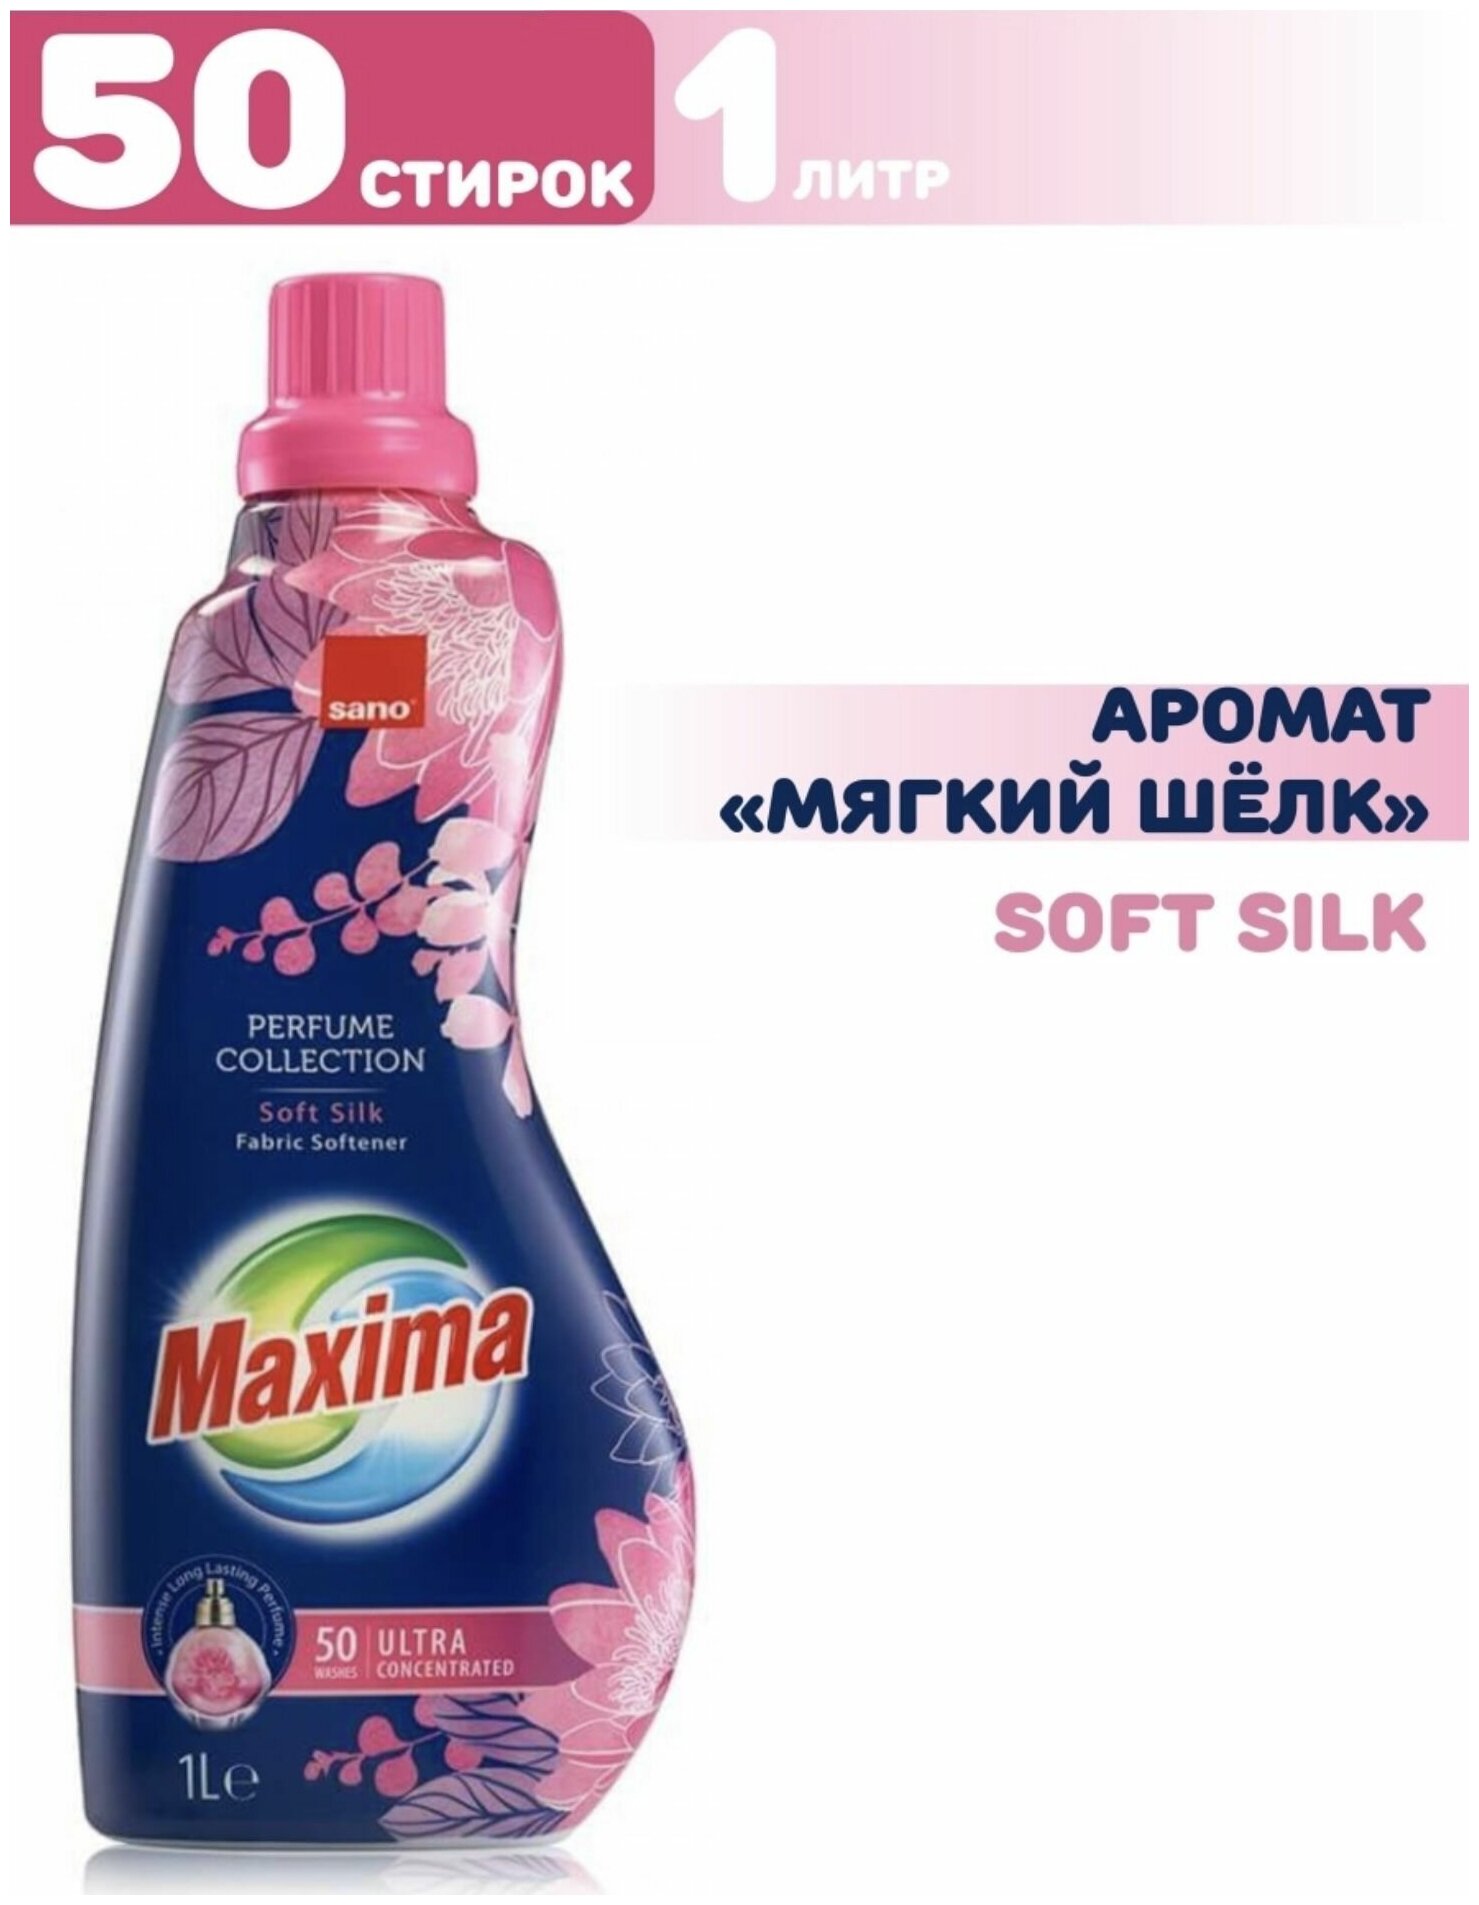 Кондиционер для стирки белья Sano Maxima Soft Silk Сано Мягкий шелк Концентрированный парфюм ополаскиватель, смягчитель для одежды,1 литр на 50 стирок